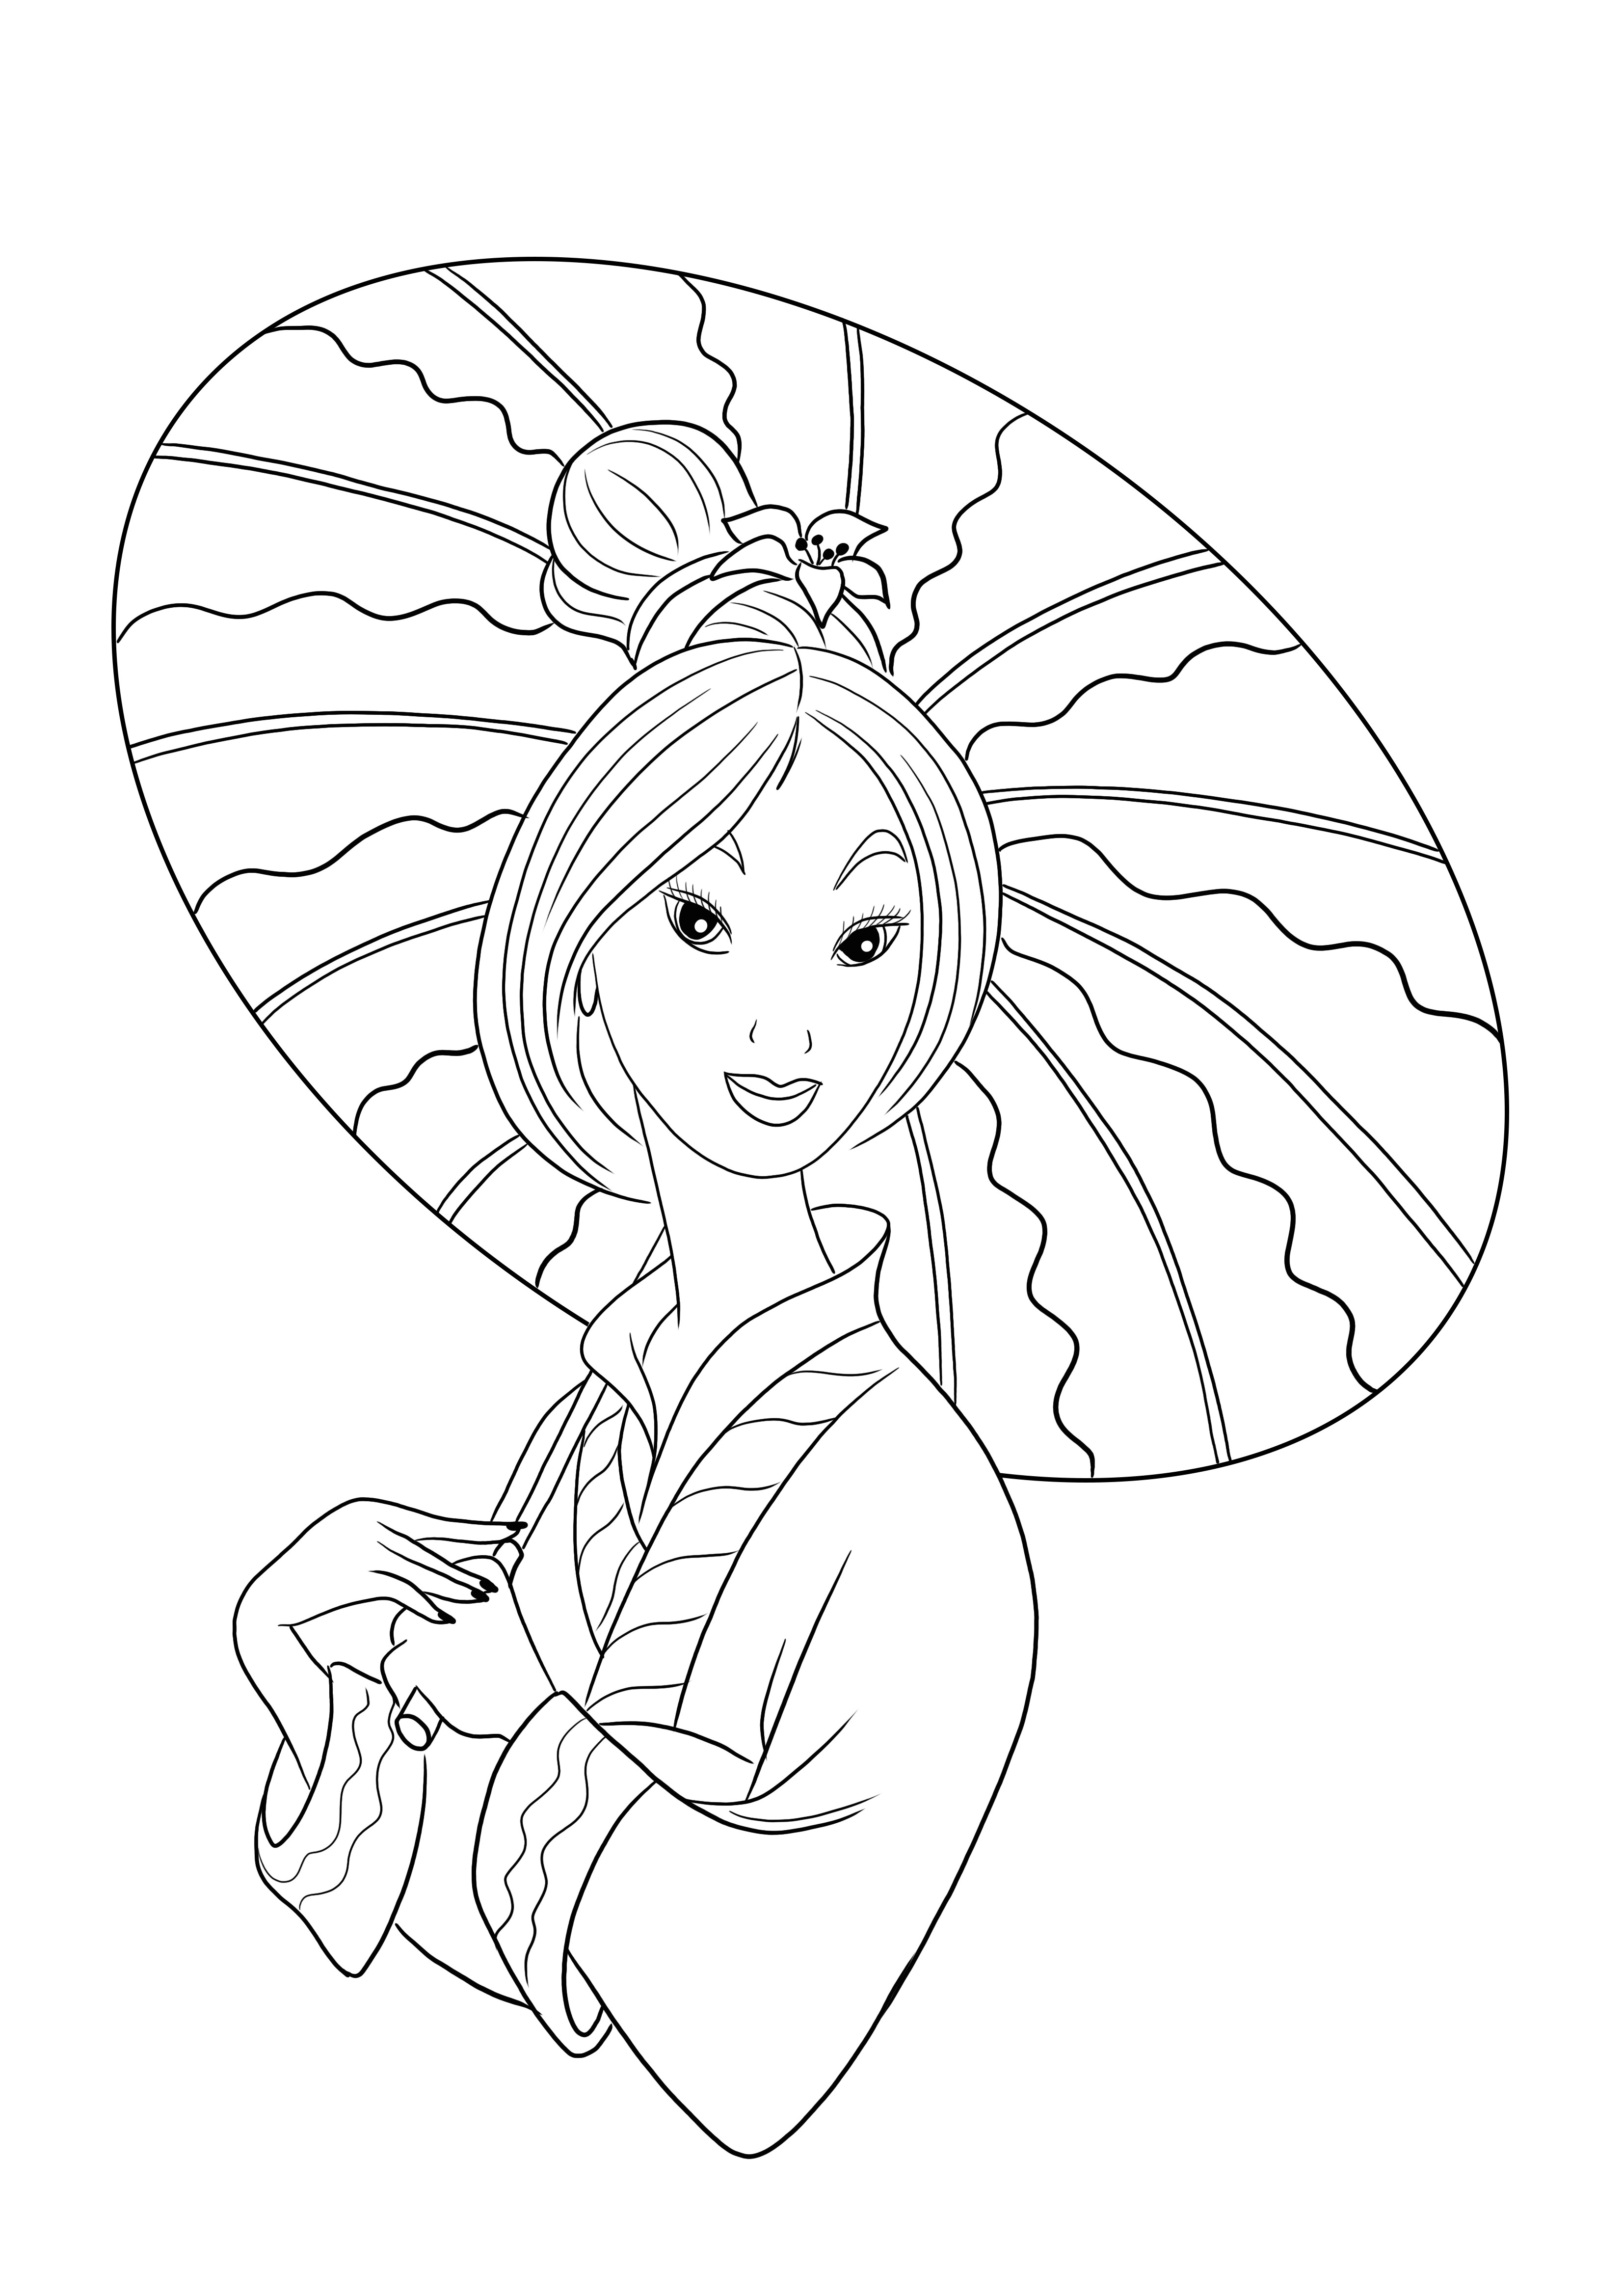 Princesa Mulan gratis para colorear e imprimir imágenes para que los niños se diviertan